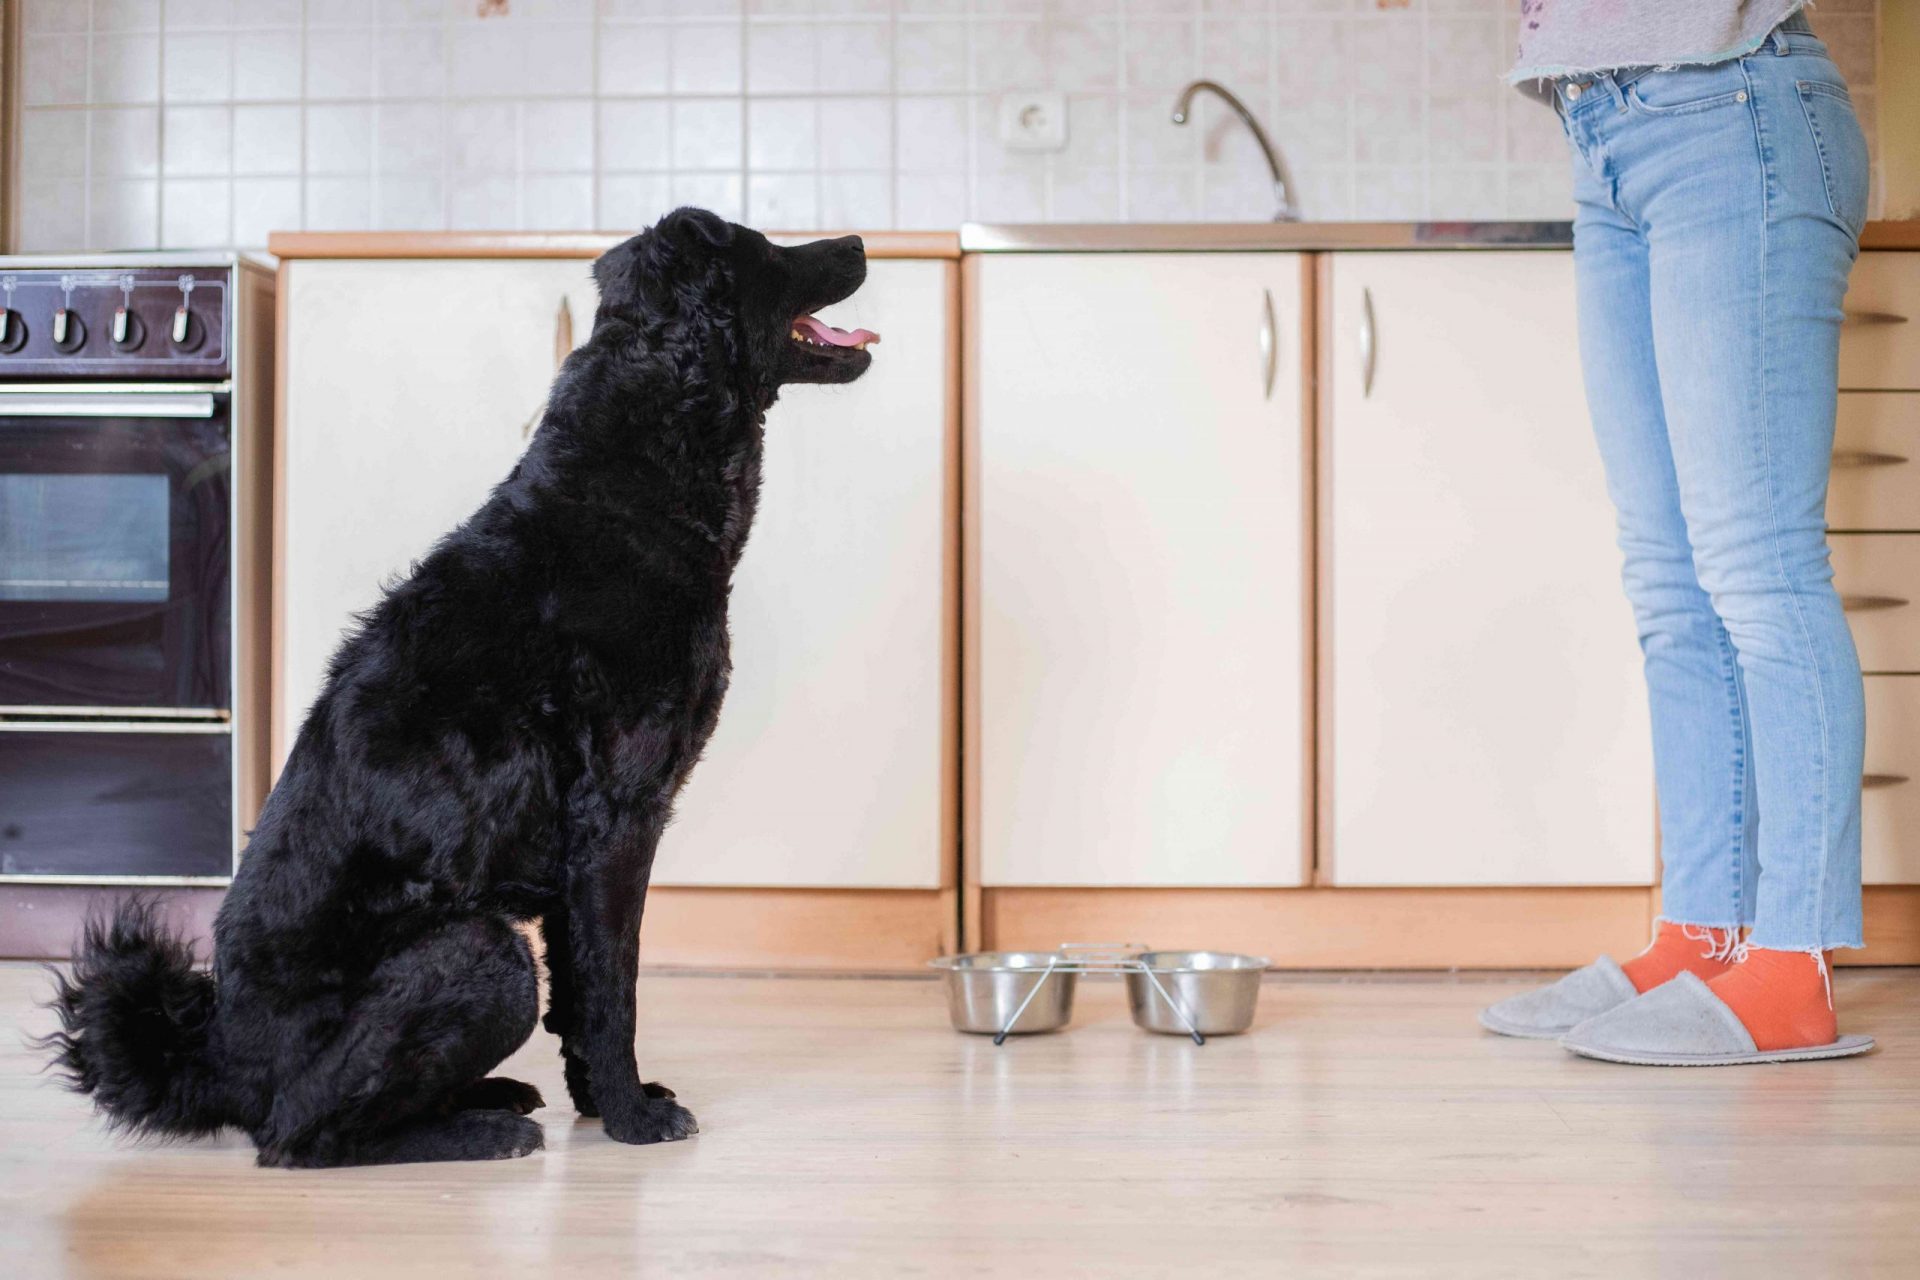 el perro mira fijamente a su dueño humano en la cocina junto a su cuenco vacío